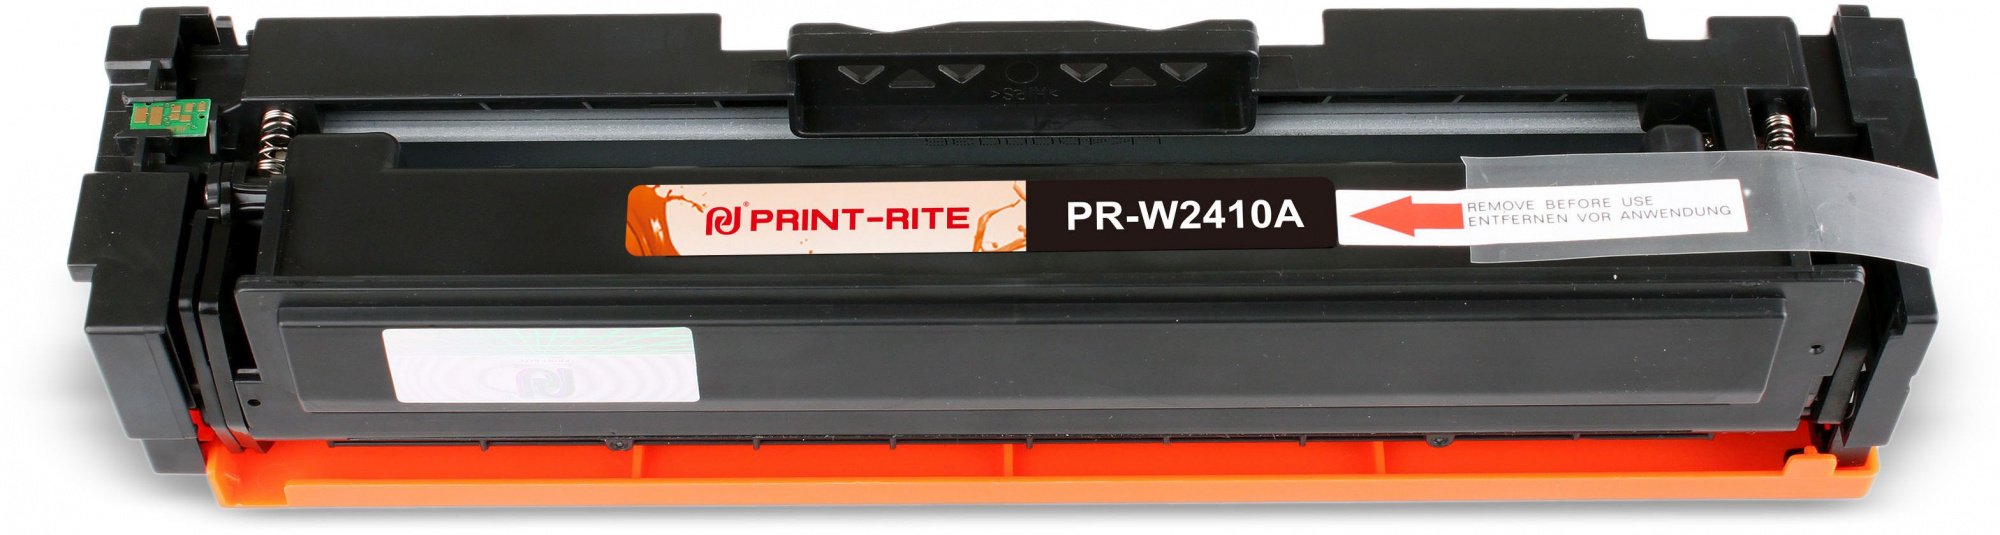   Print-Rite TFHBB4BPU1J PR-W2410A W2410A  (1050.)  HP Color LaserJet Pro M155,MFP M182nw/M183fw